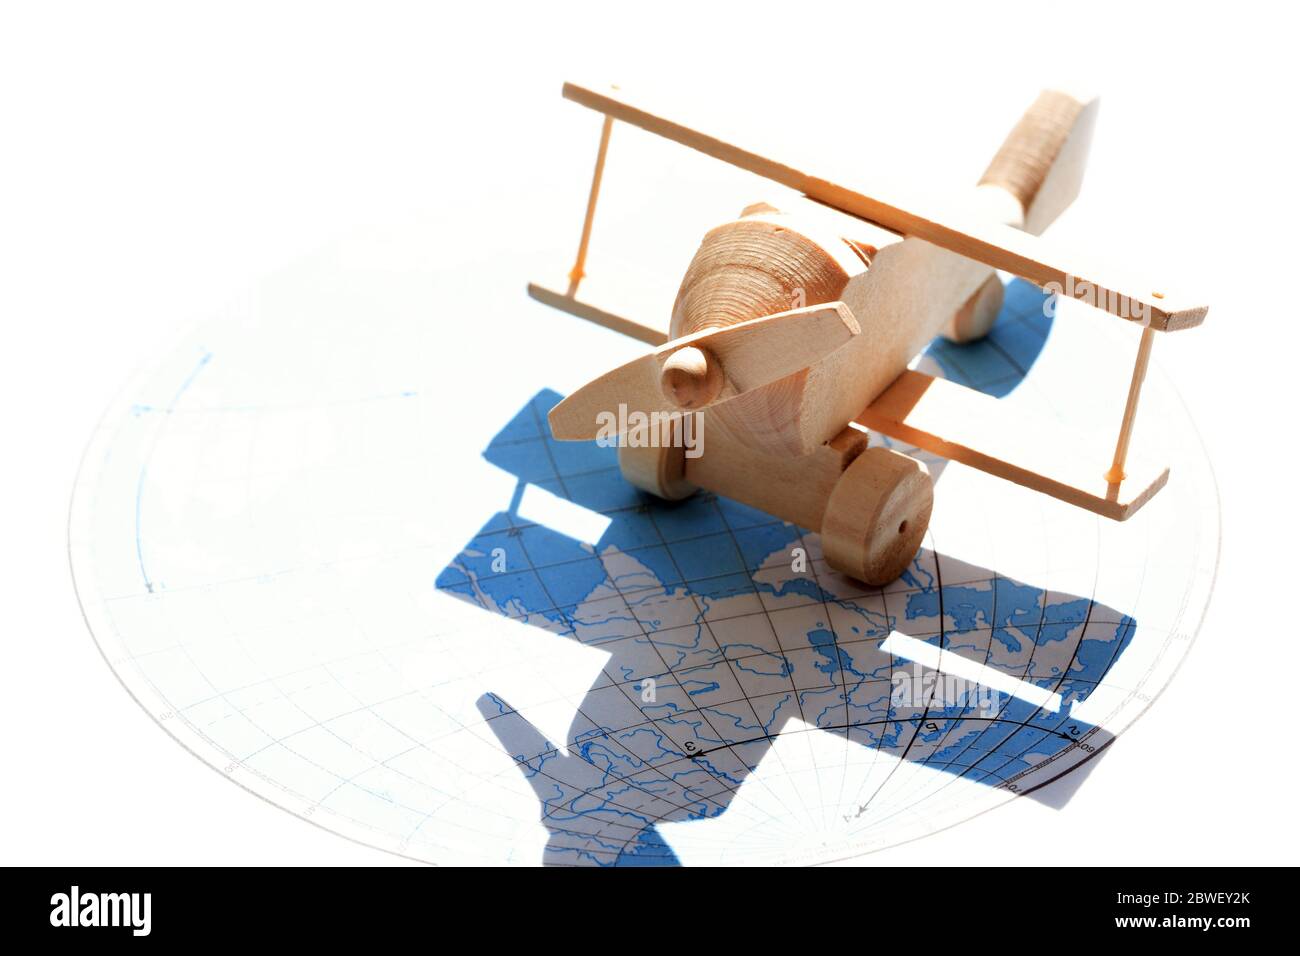 Concetto di viaggio. Piccolo aeroplano di legno contro la luce solare con mappa come ombra Foto Stock